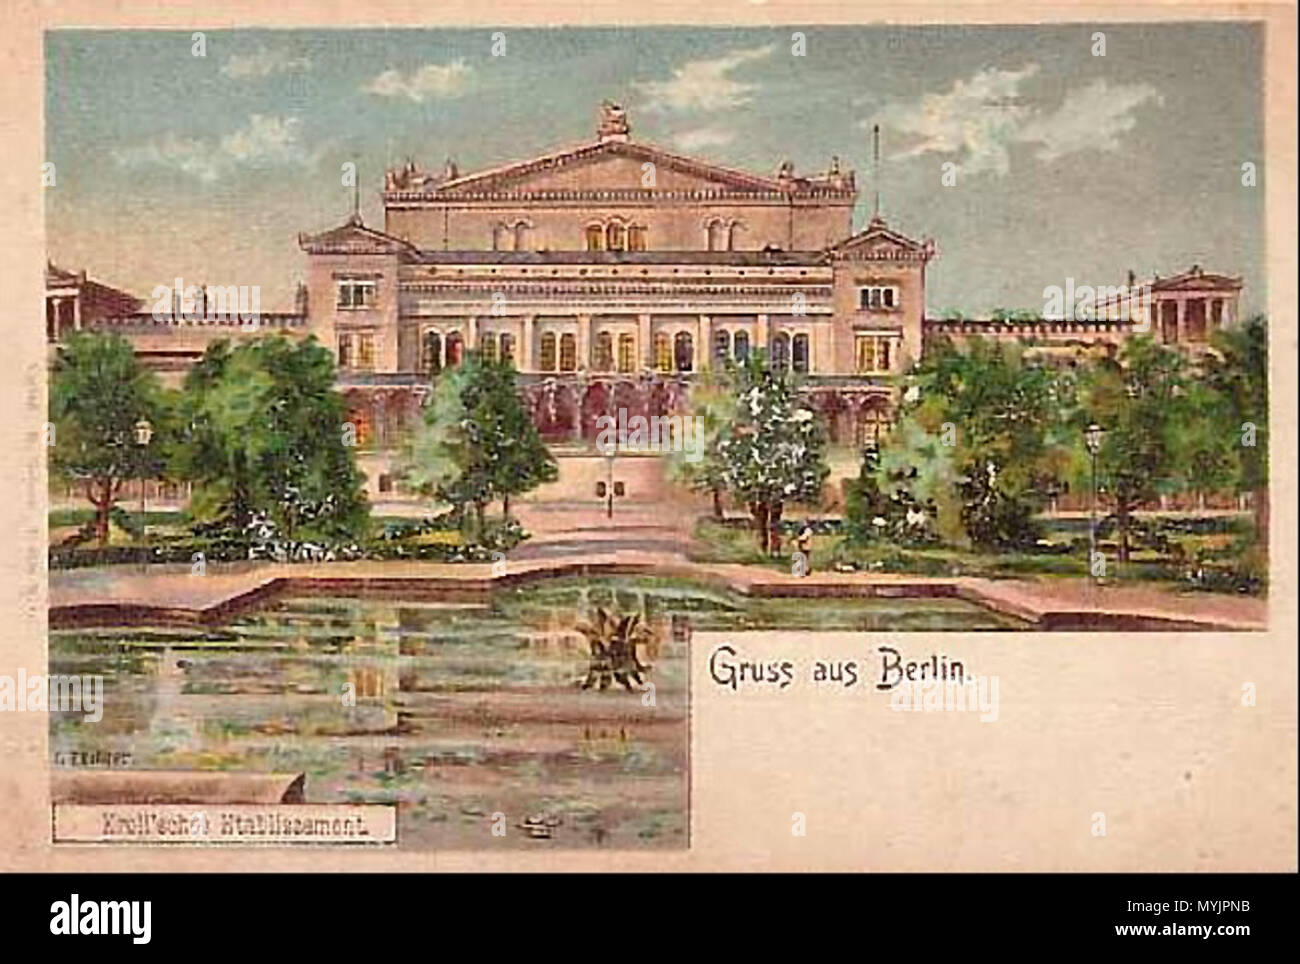 . Postkarte mit Bild des so genannten "Krolloper', einem historischen Vergnügungspark - Center und Theater in Berlin. ca. 1890. Unterzeichnet L. Zither 304 Krolloper um 1890 Stockfoto